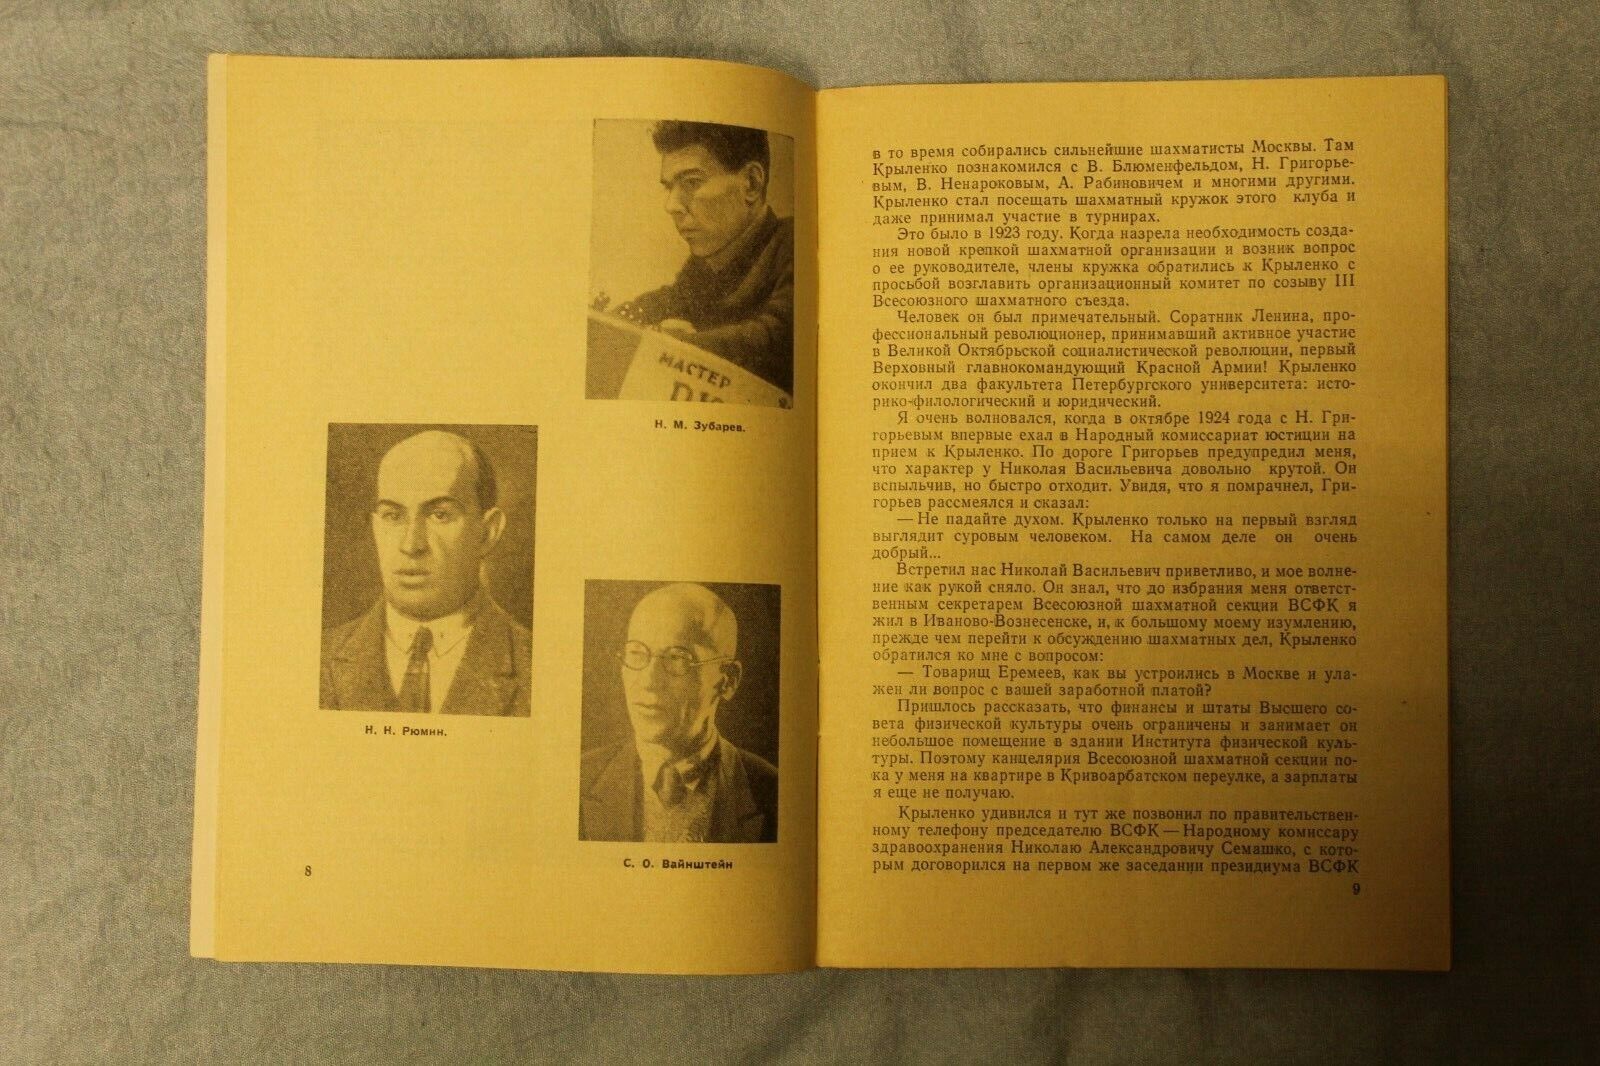 11686.Soviet Chess book Baturinsky-Karpov library: The First Steps, Eremeev 1968